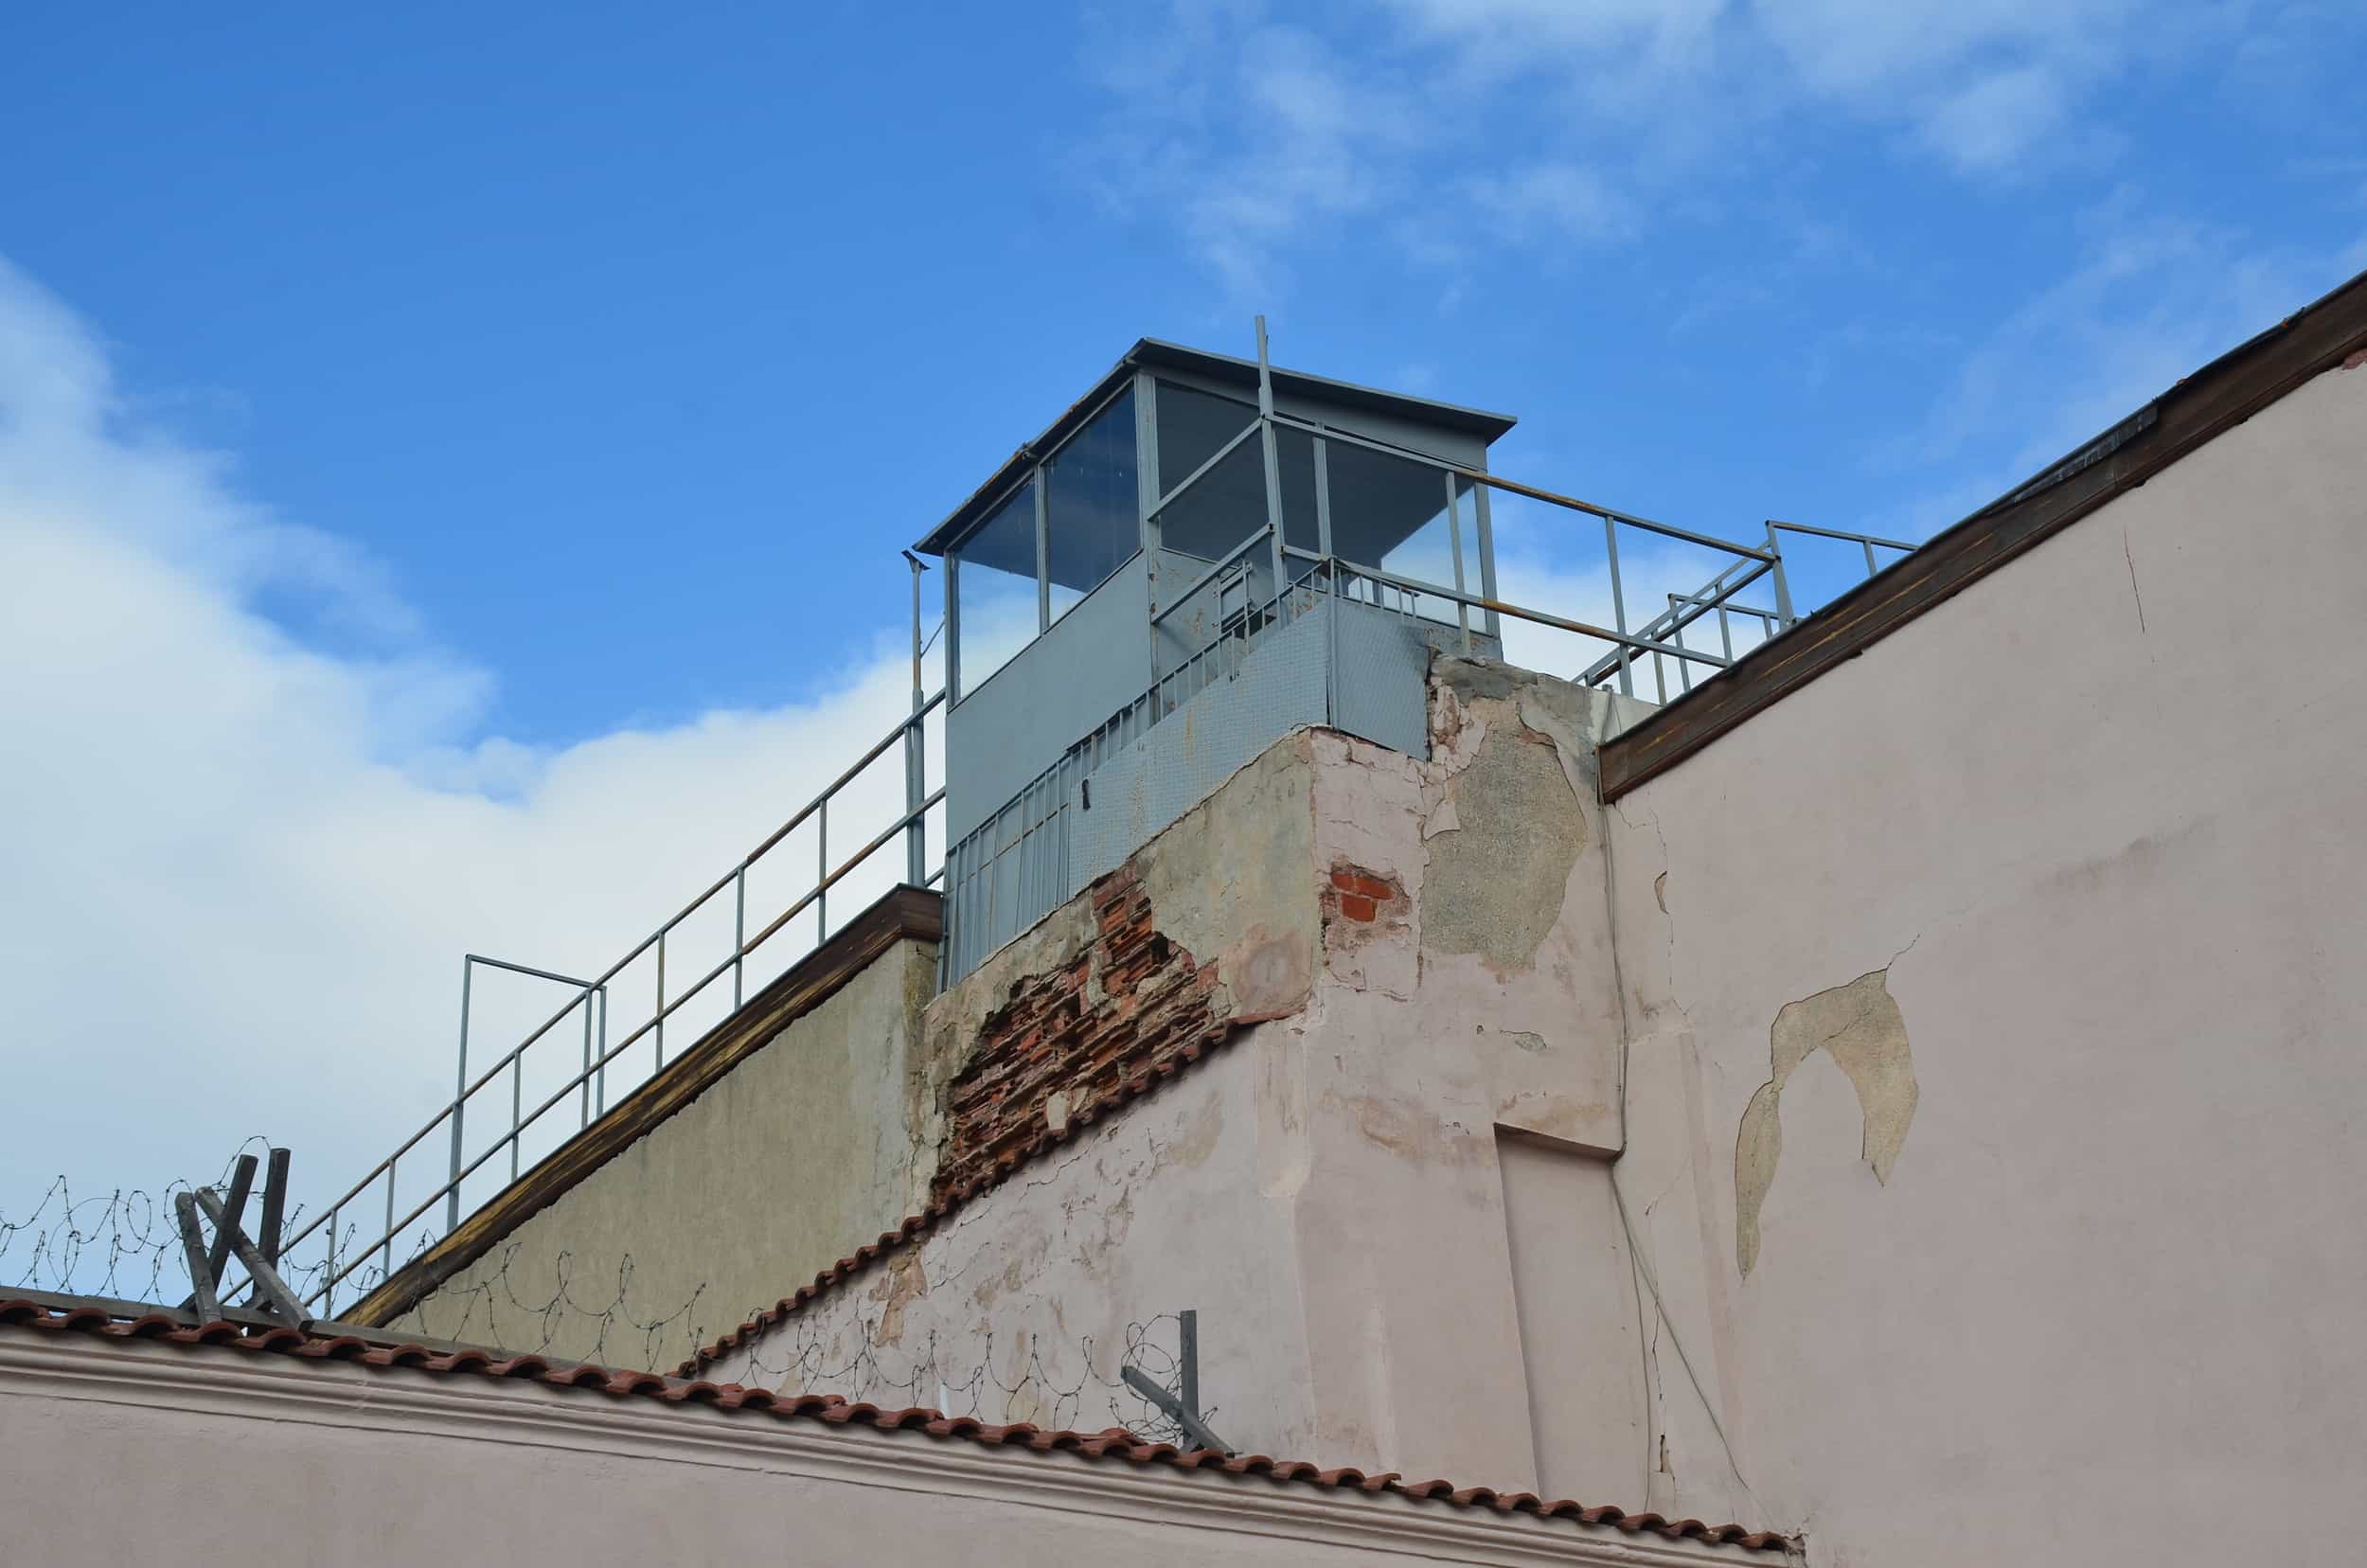 Guard tower above the 1st Ward courtyard at Ulucanlar Prison in Ankara, Turkey